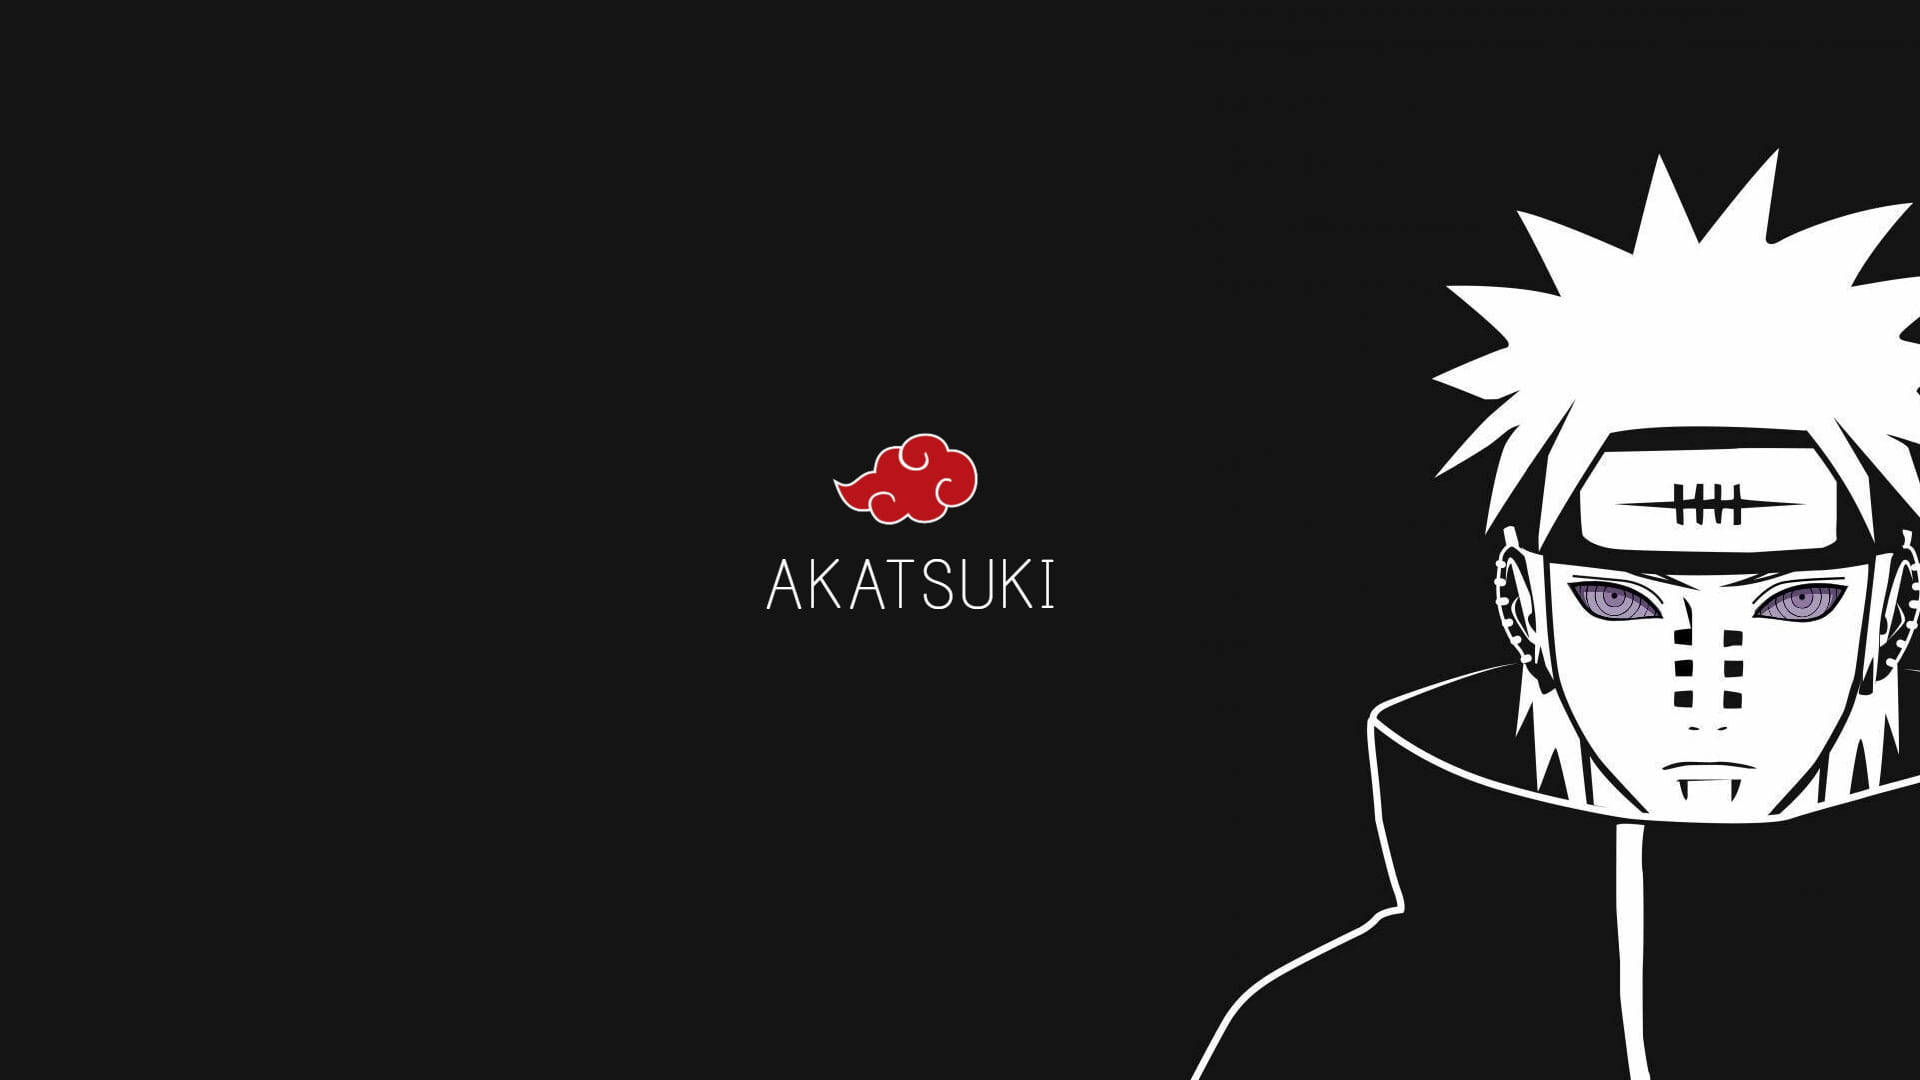 Akatsuki Logo And Nagato Wallpaper